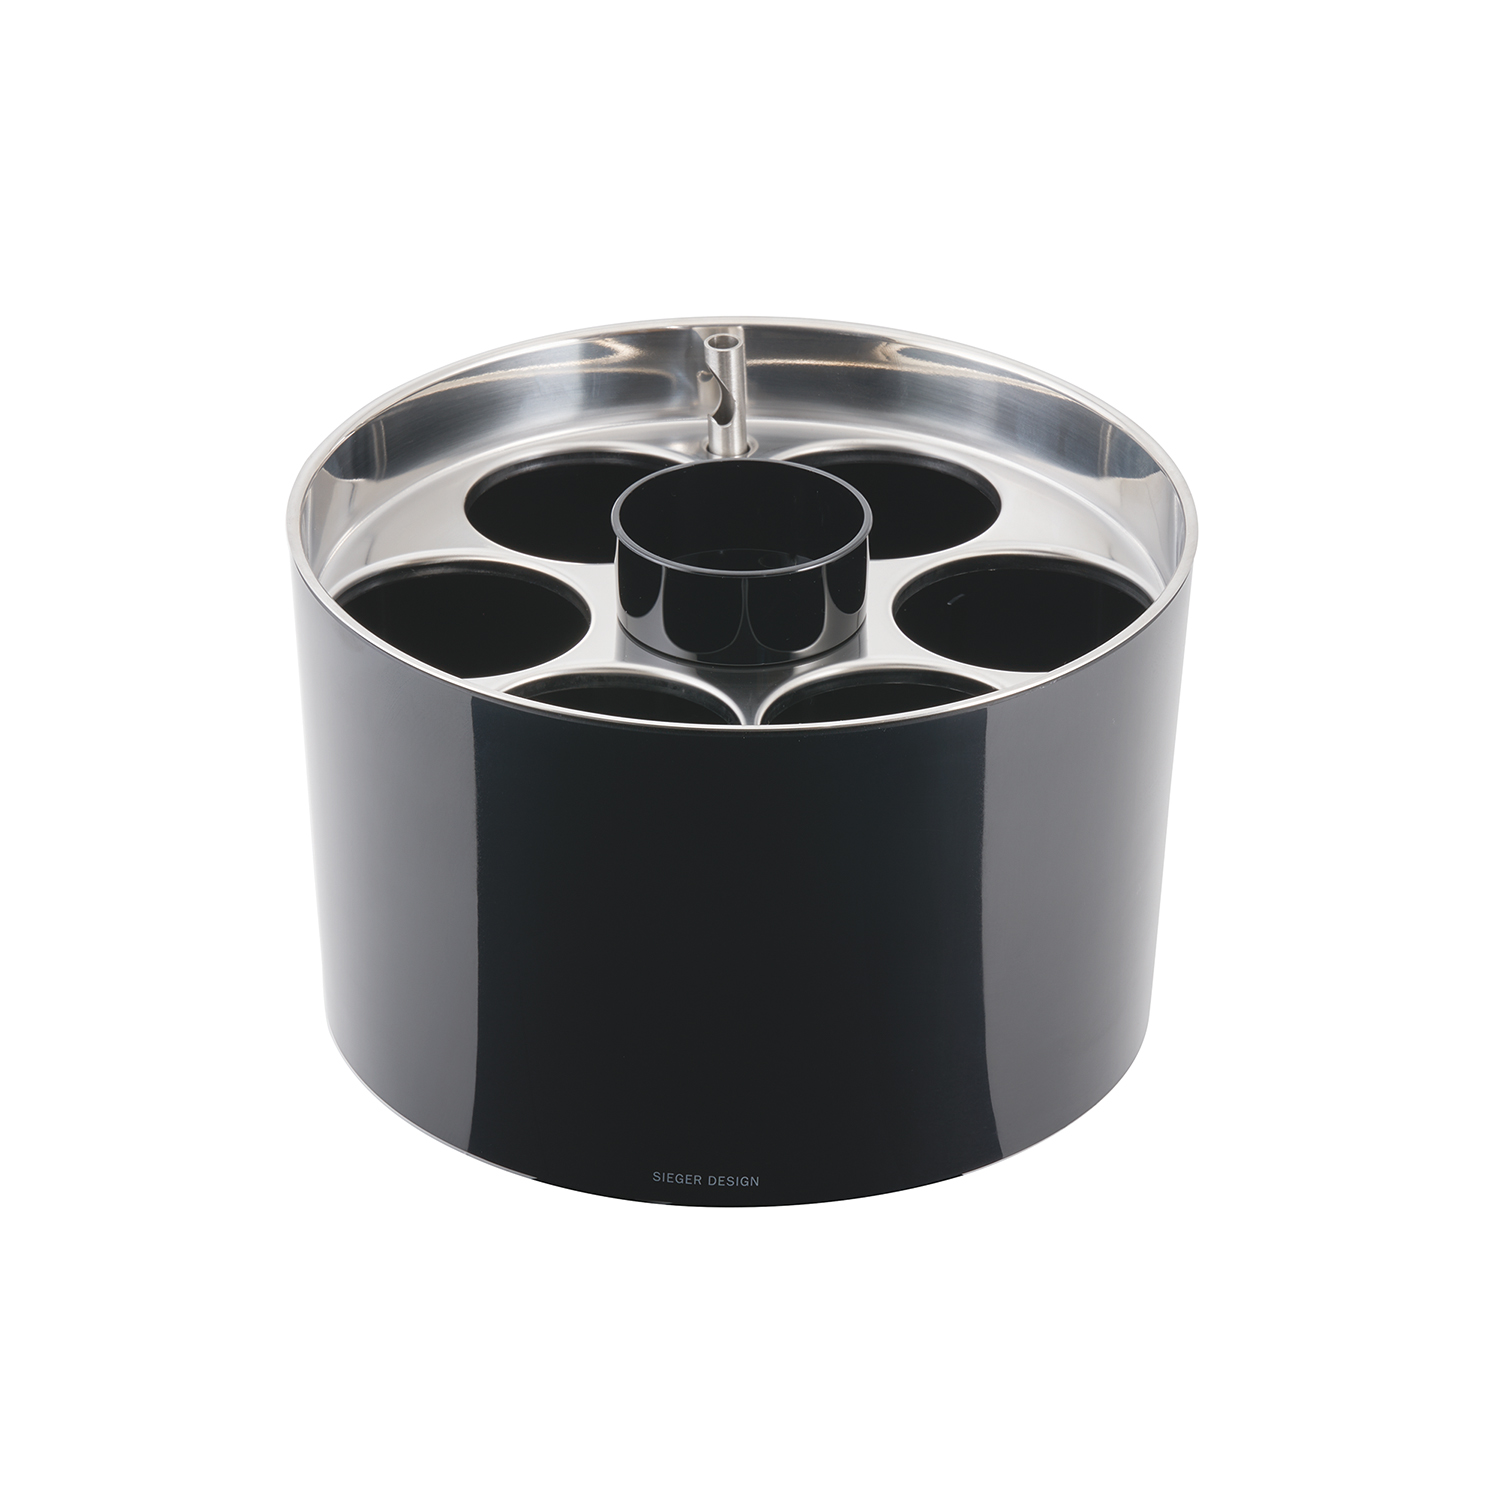 APS Konferenzkühler STAR, inkl. Kühlakku, Farbe: schwarz, Durchmesser: 230 mm, Höhe: 150 mm, mit 6 Öffnungen (6,7 cm),